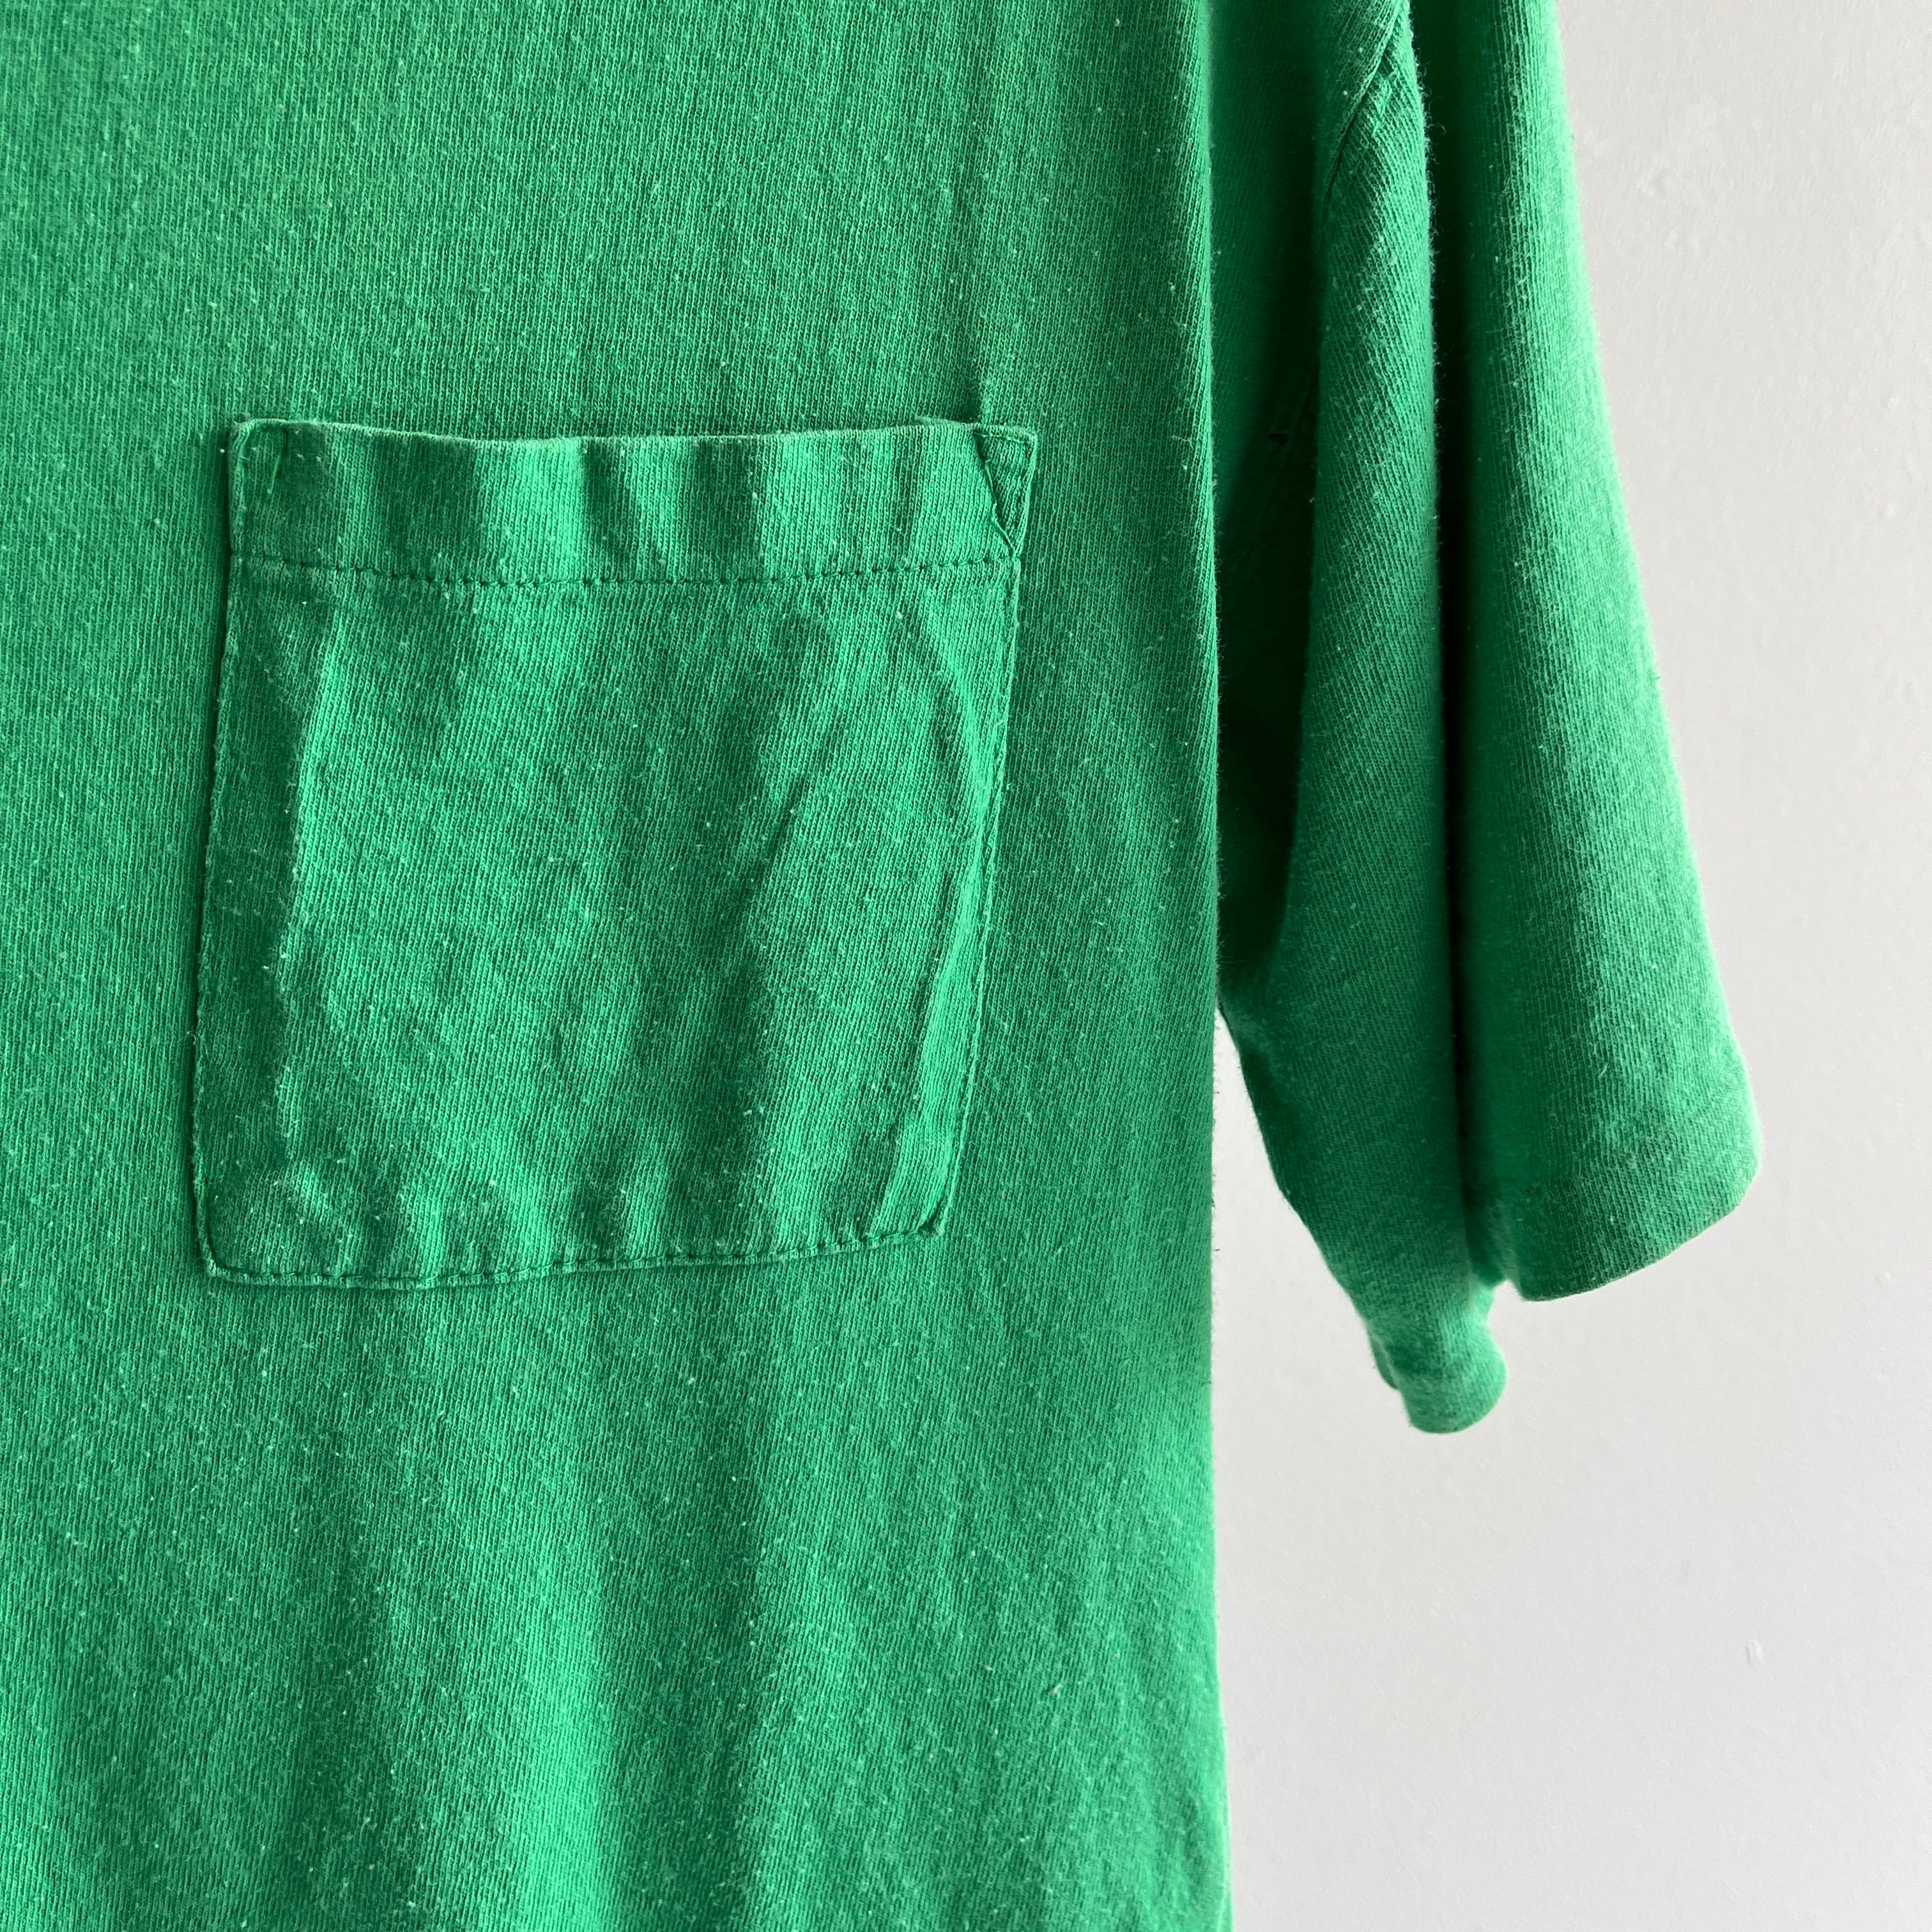 T-shirt en coton vert Kelly vierge des années 1980